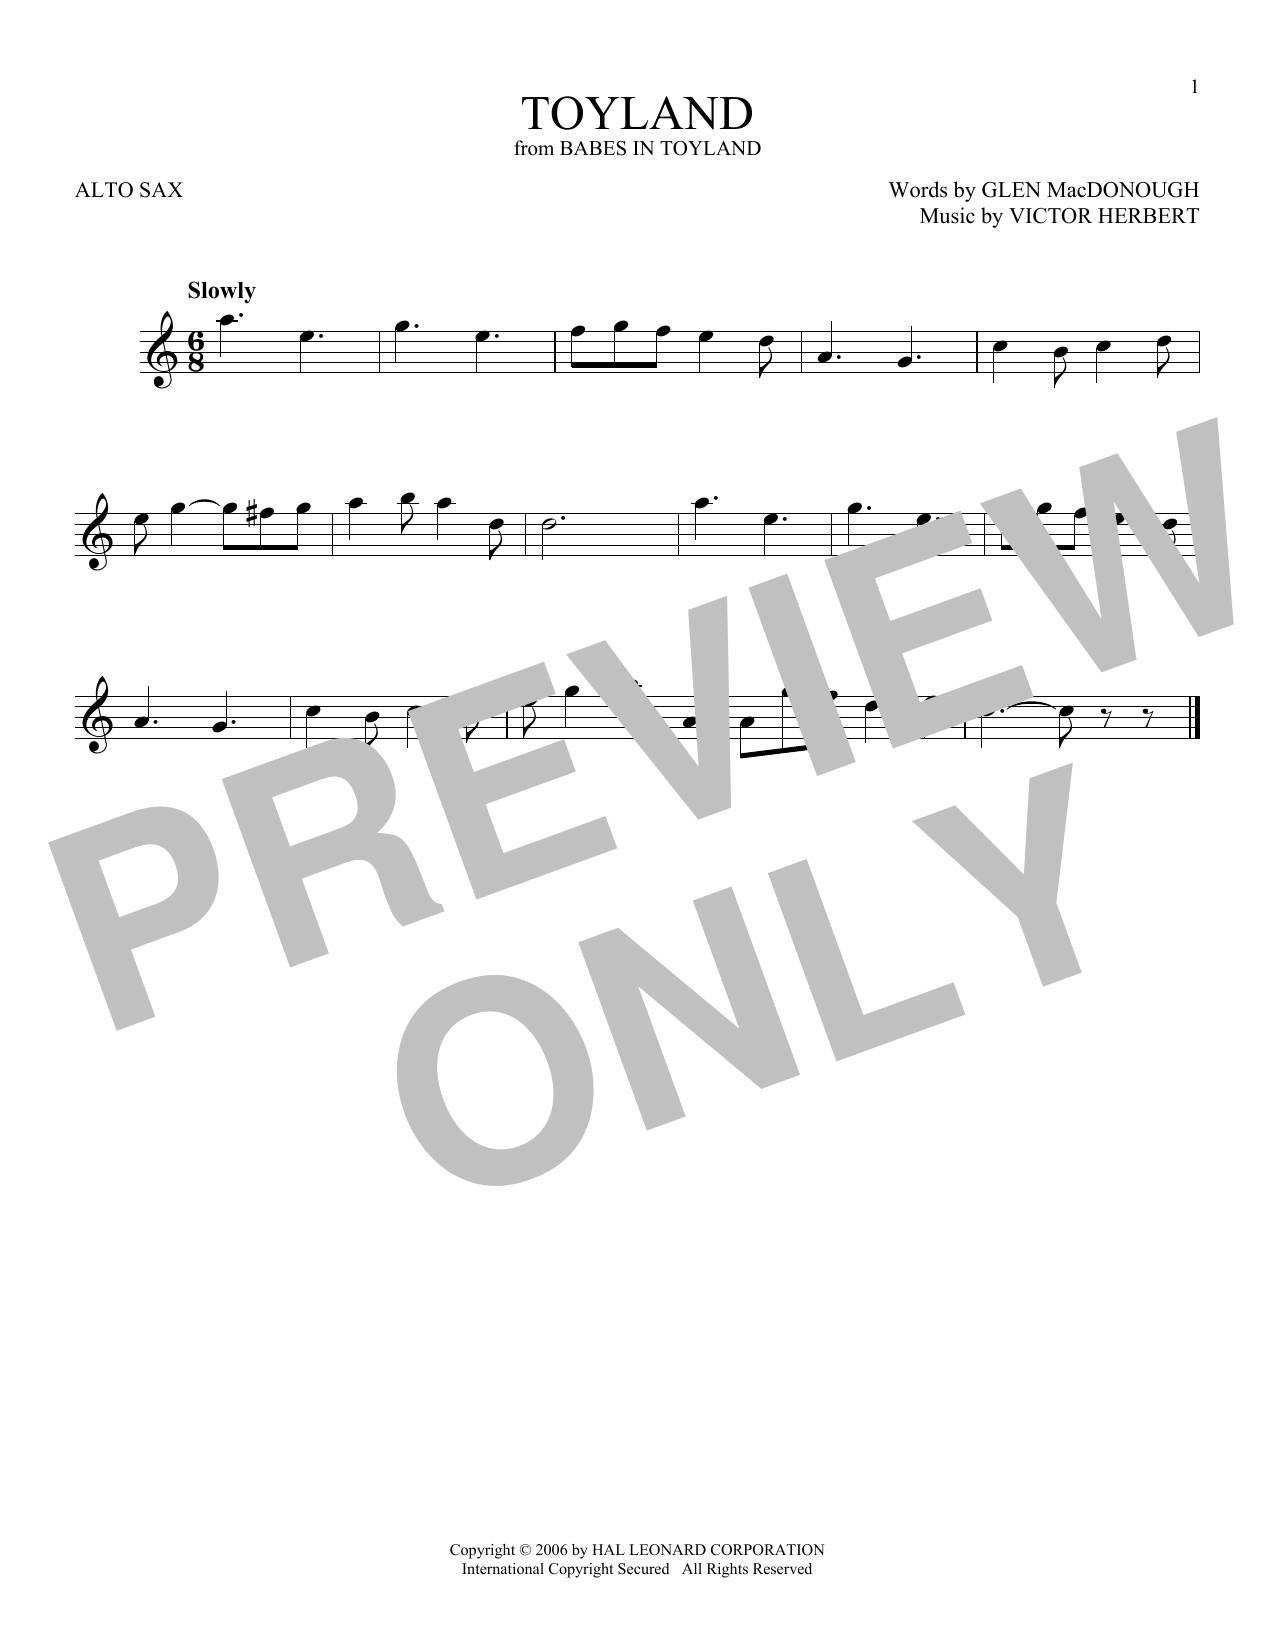 Victor Herbert Toyland Sheet Music Notes & Chords for Ukulele - Download or Print PDF